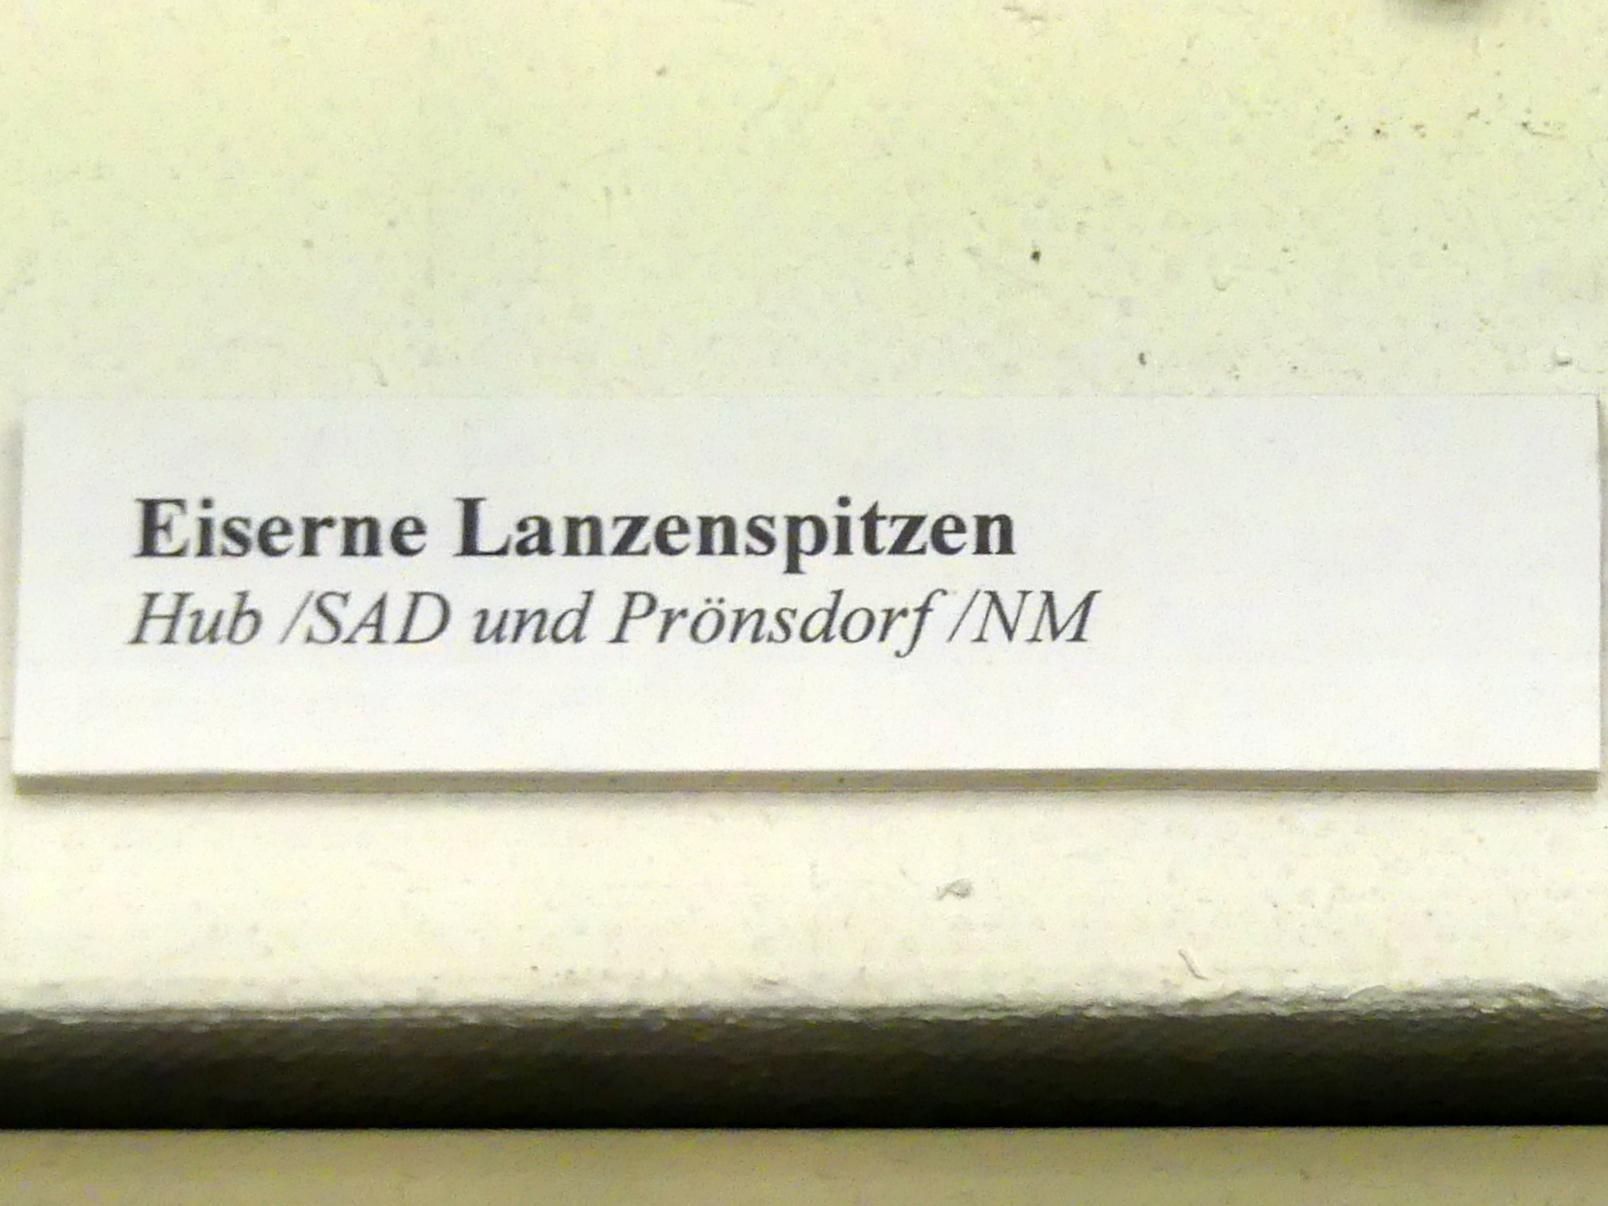 Eiserne Lanzenspitze, Hallstattzeit, 700 - 200 v. Chr., Bild 2/2